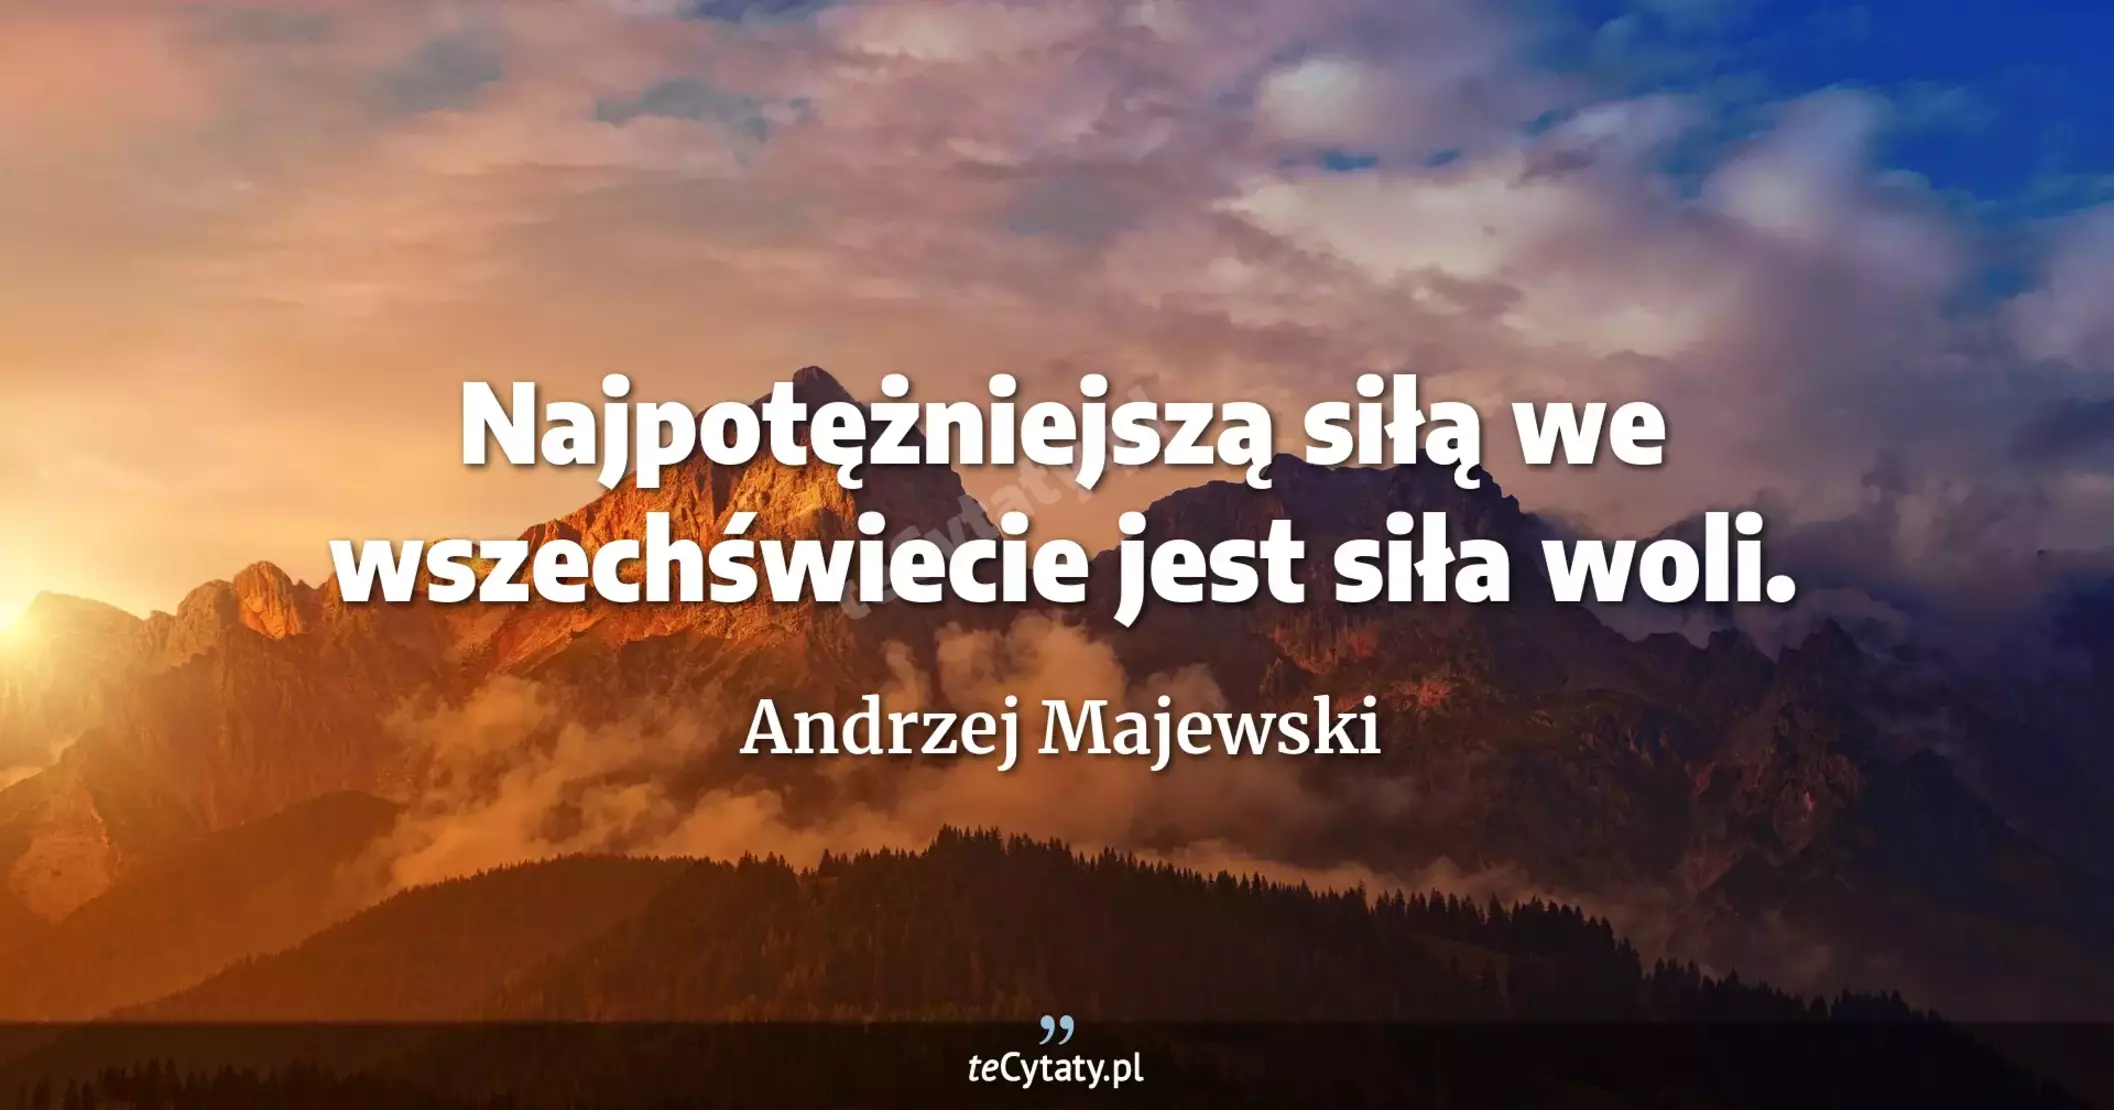 Najpotężniejszą siłą we wszechświecie jest siła woli. - Andrzej Majewski